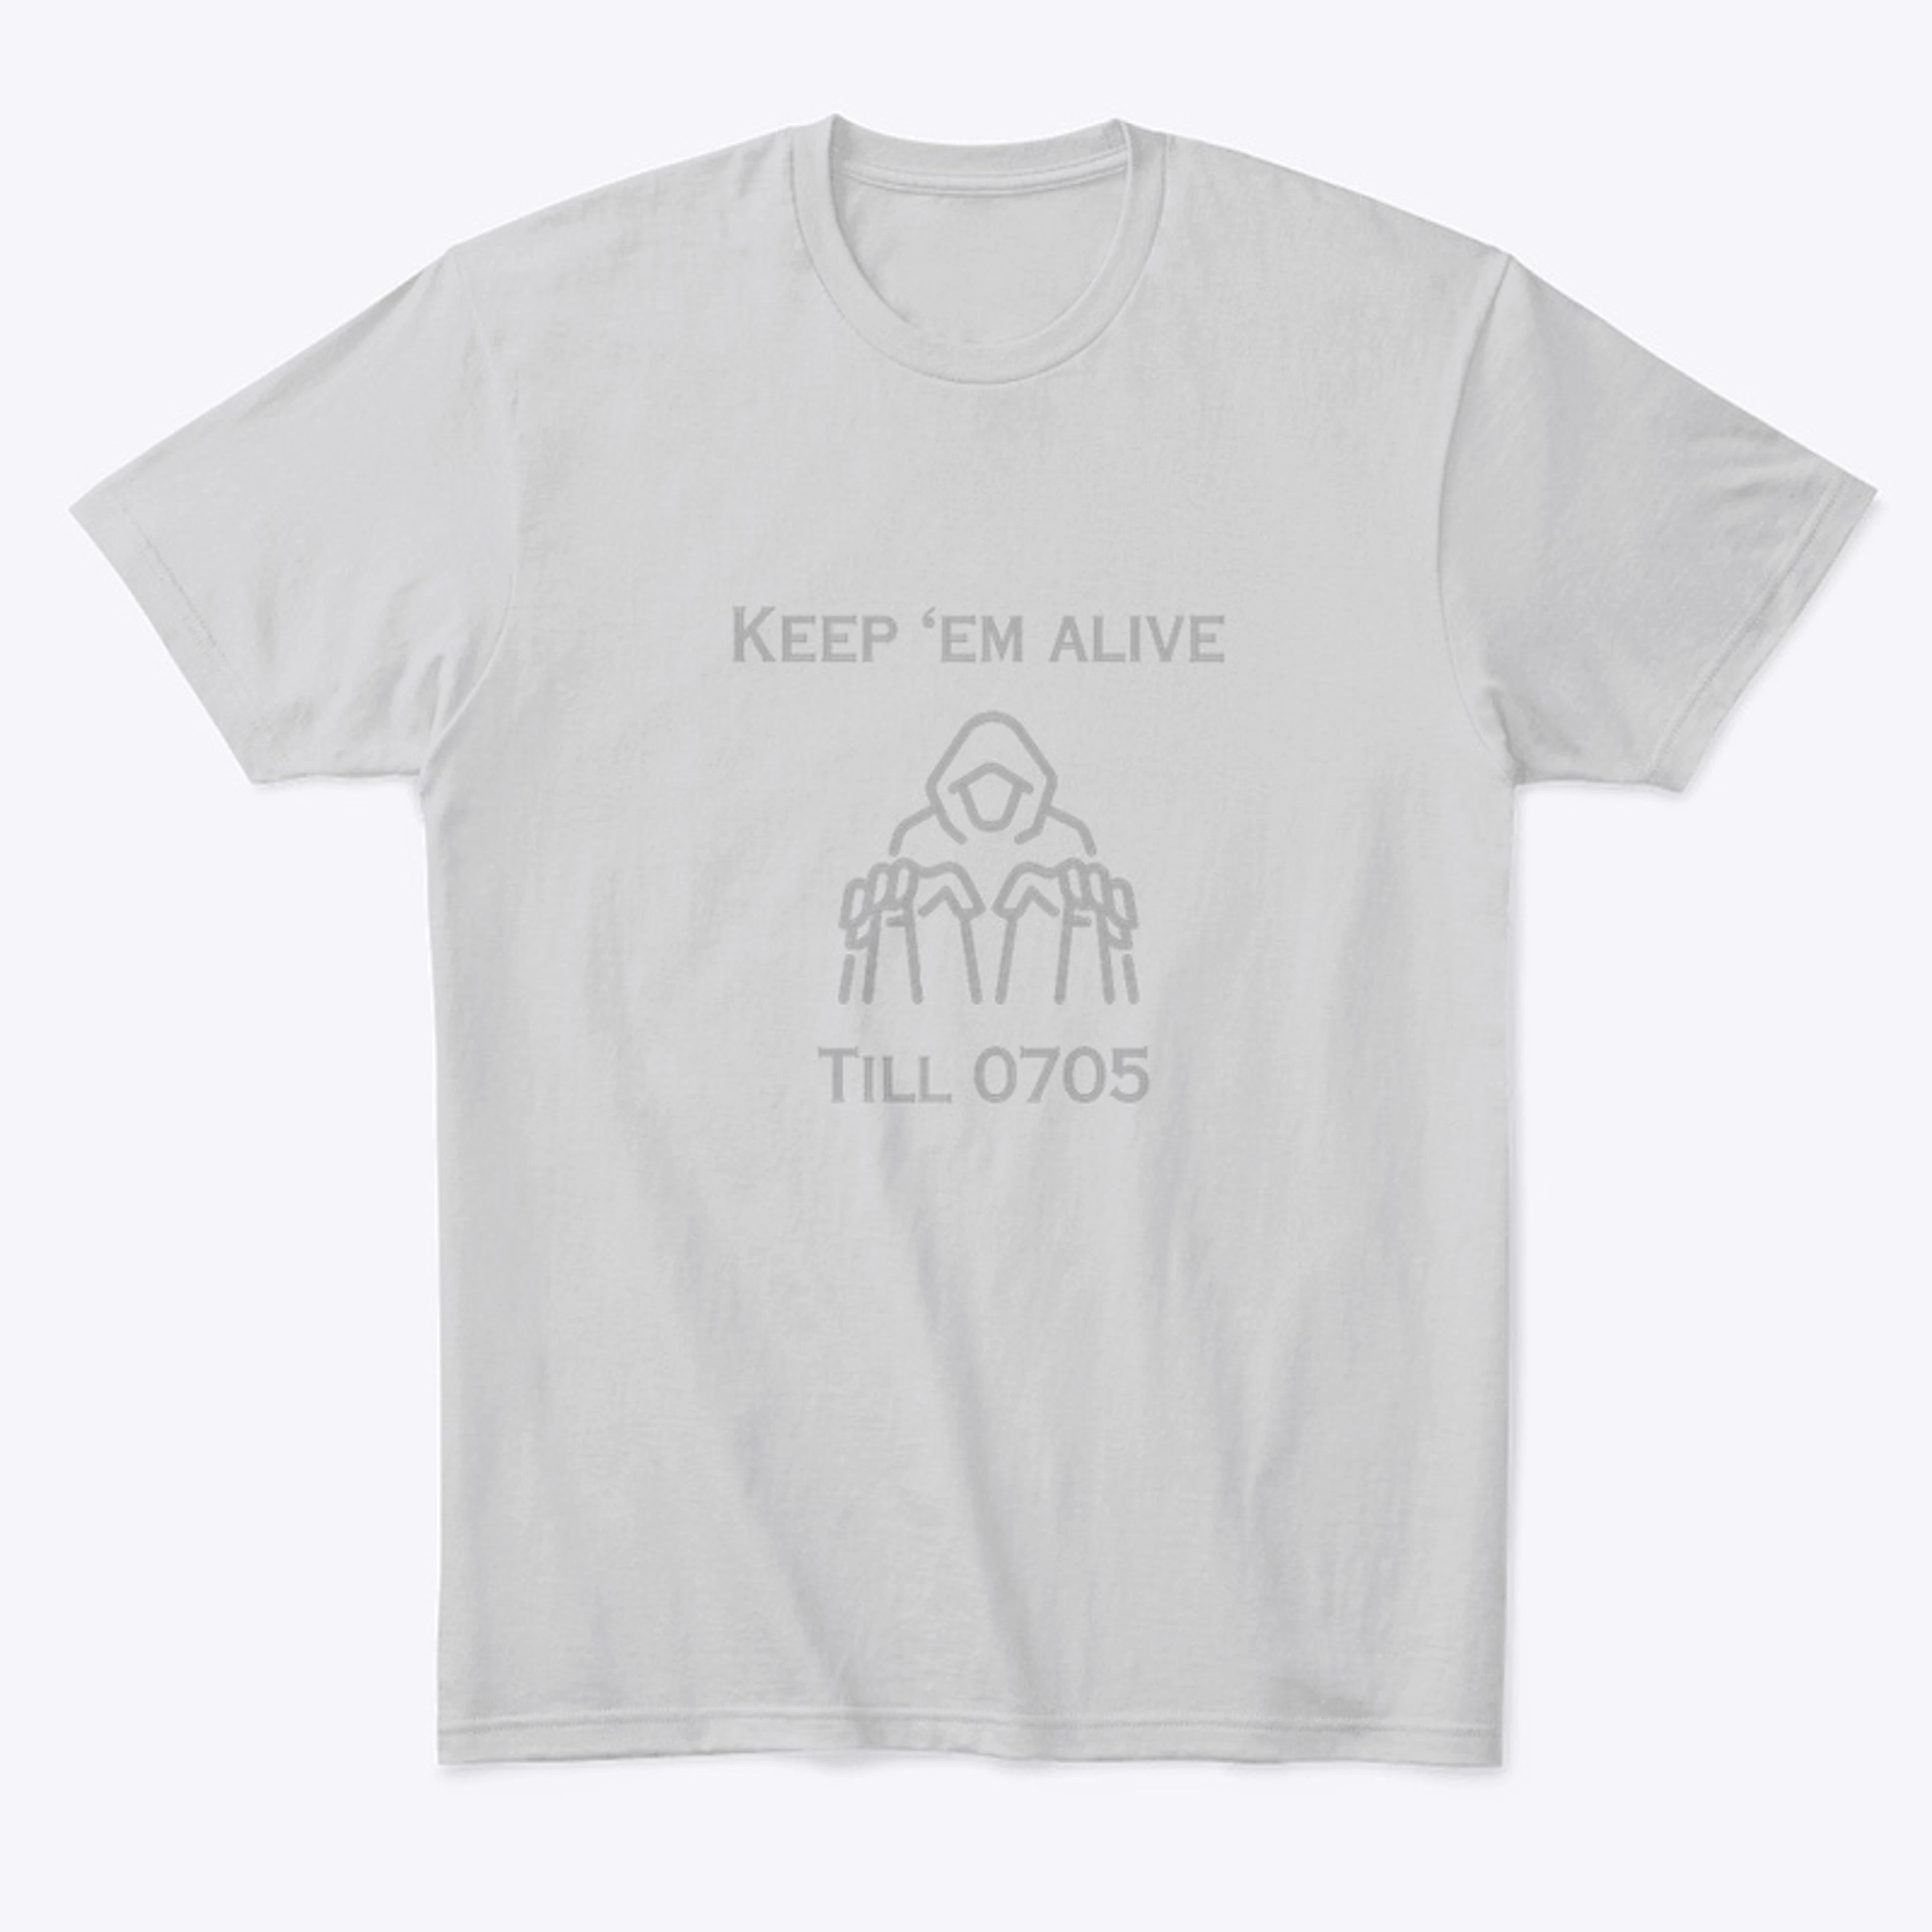 Keep ‘EM Alive